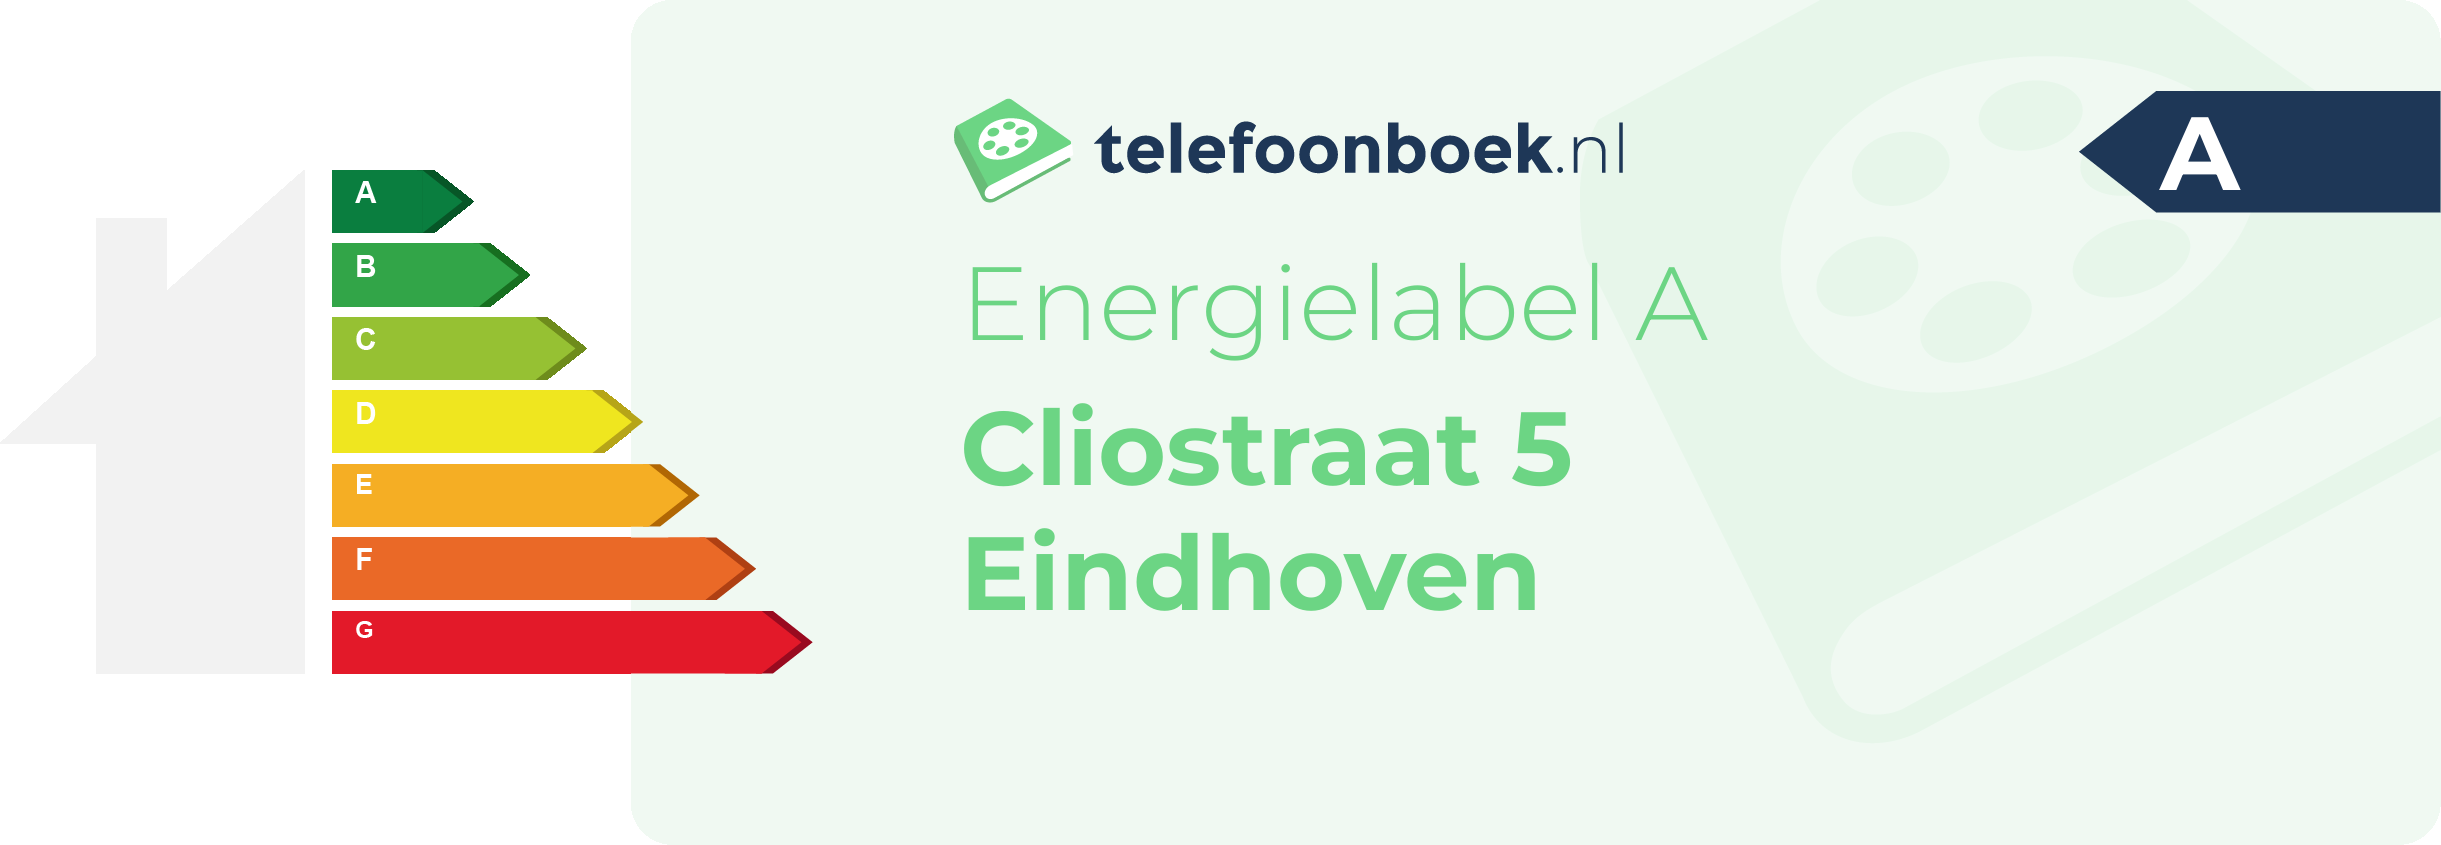 Energielabel Cliostraat 5 Eindhoven